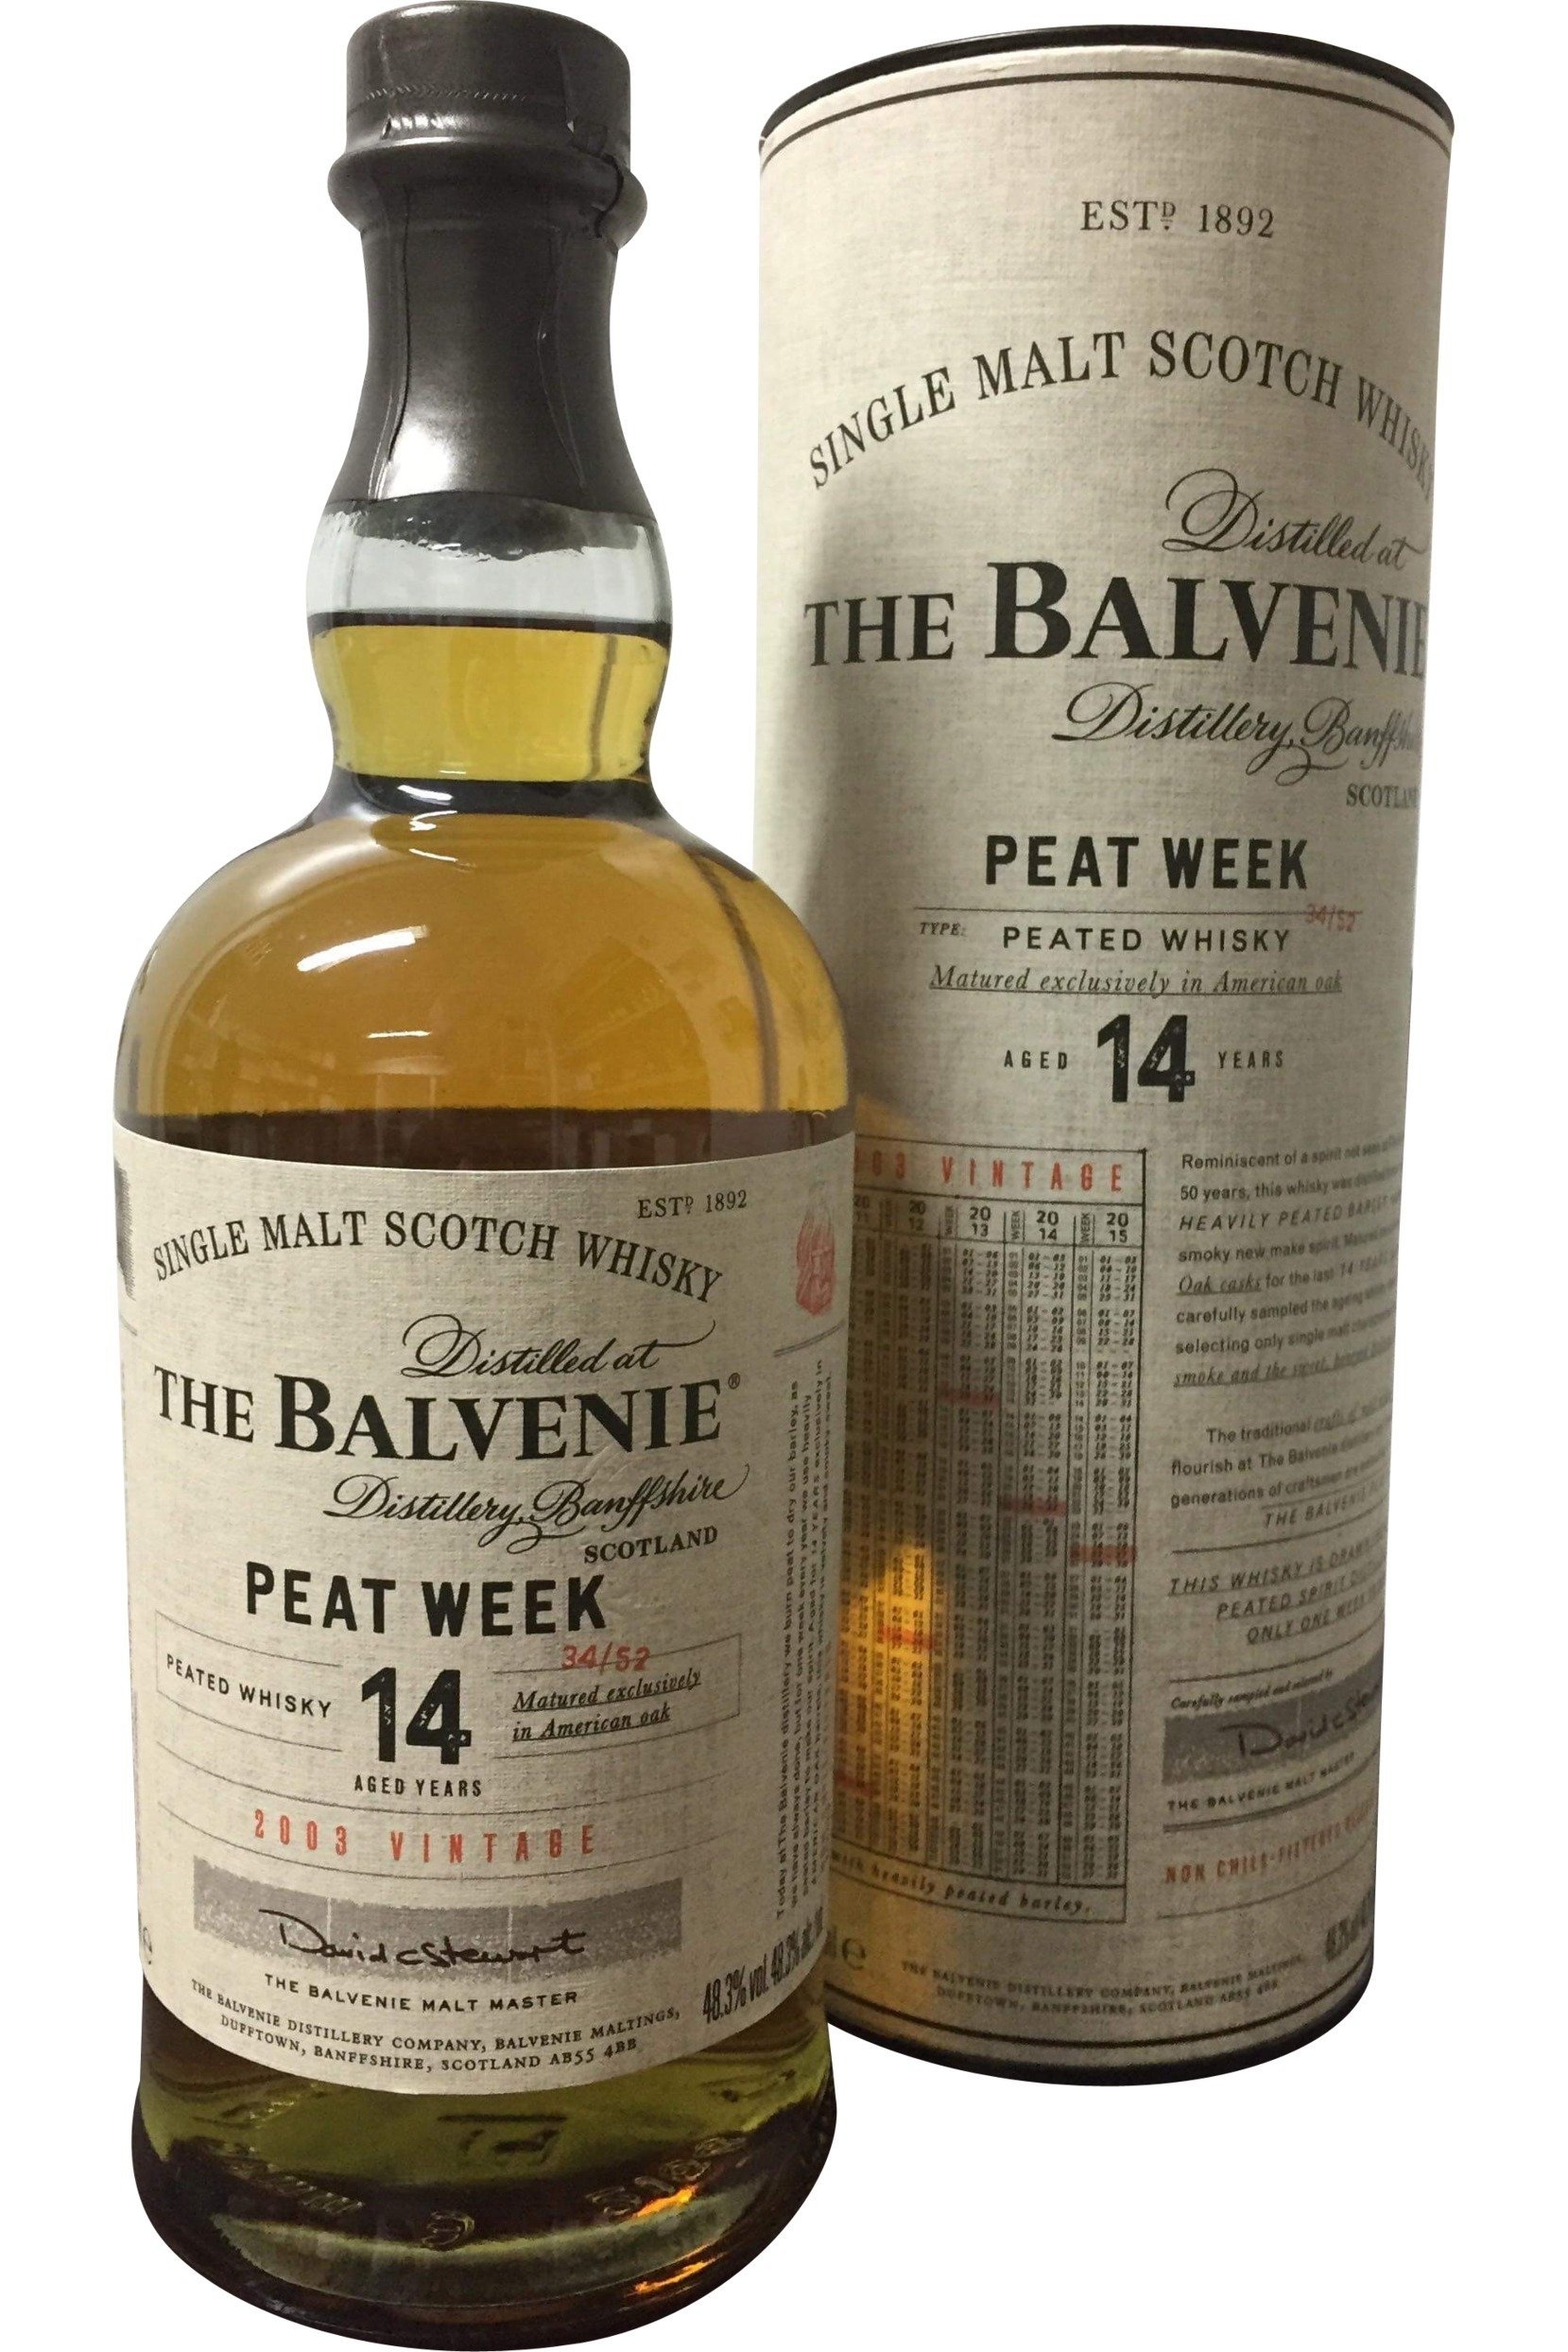 Balvenie Peat Week Aged 14 Year Old – 2003 Vintage | 48.3% 700ml